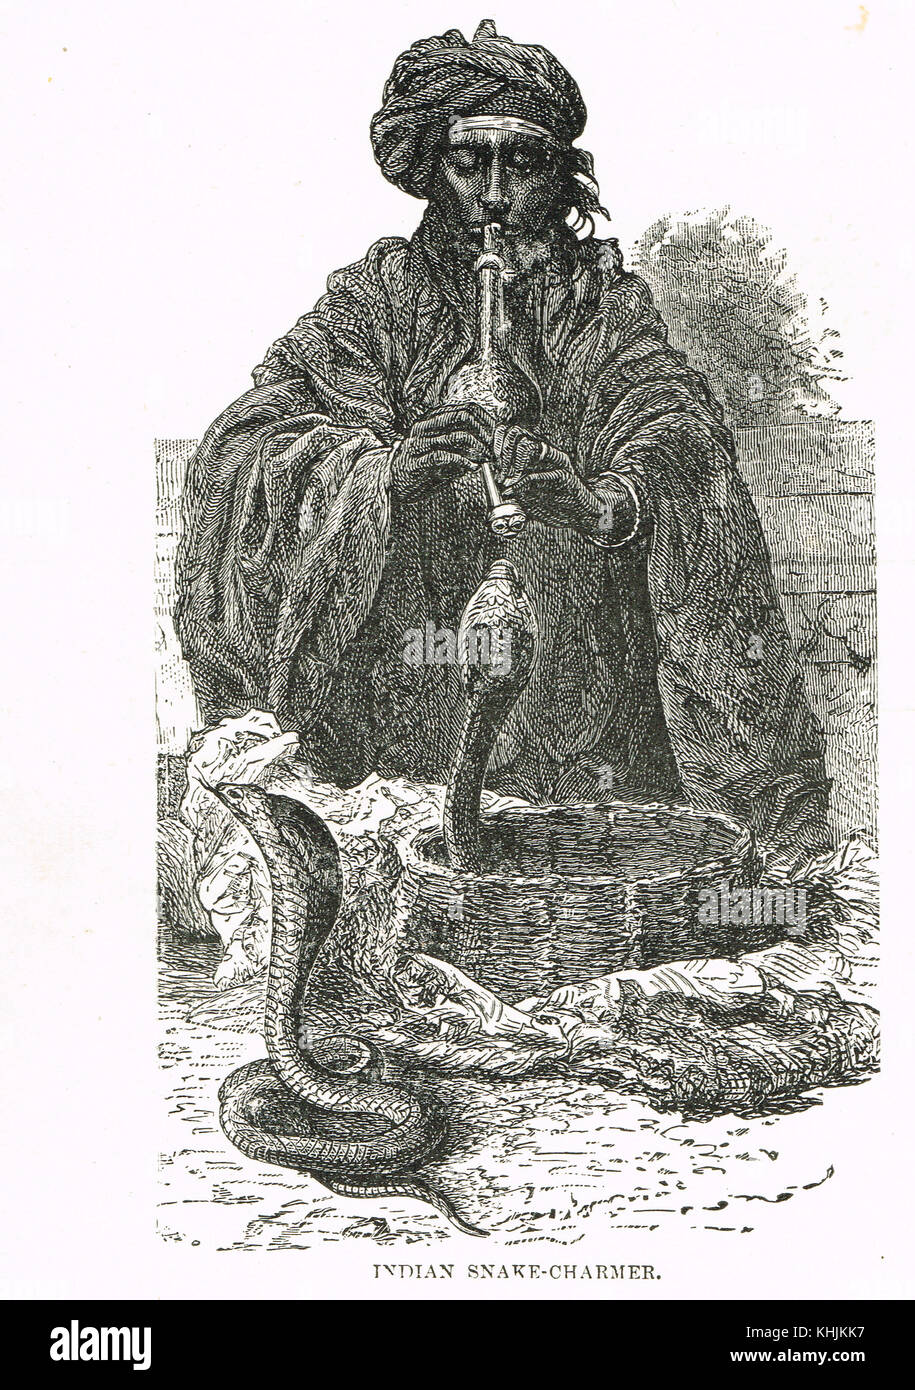 Un Indien charmeur de serpent, 19e siècle Banque D'Images